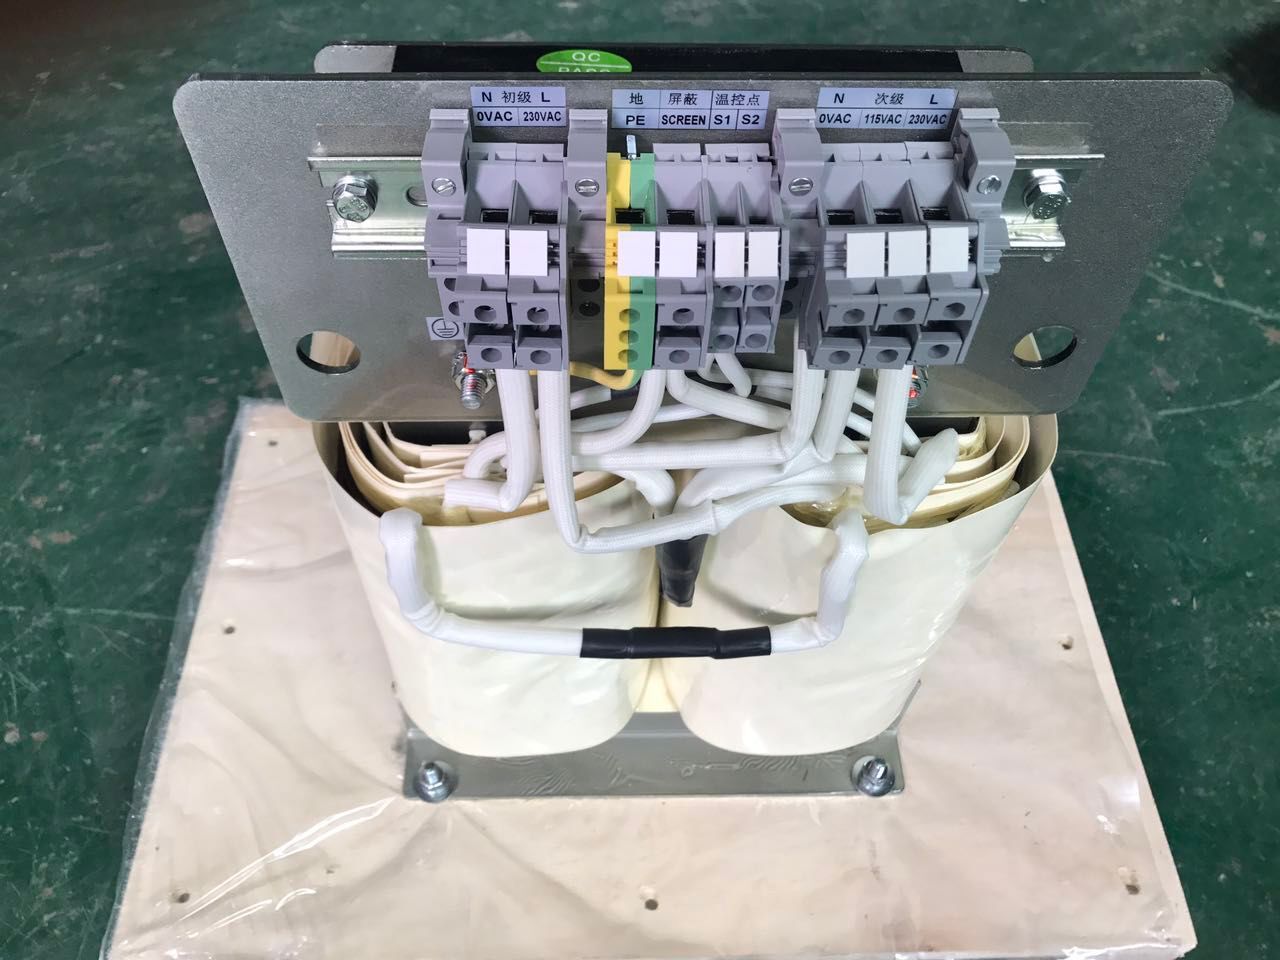 107TD47/8000VA绝缘检测仪与ES710手术室隔离变压器 远程报警终端连接在一起，为**用电安全由供应